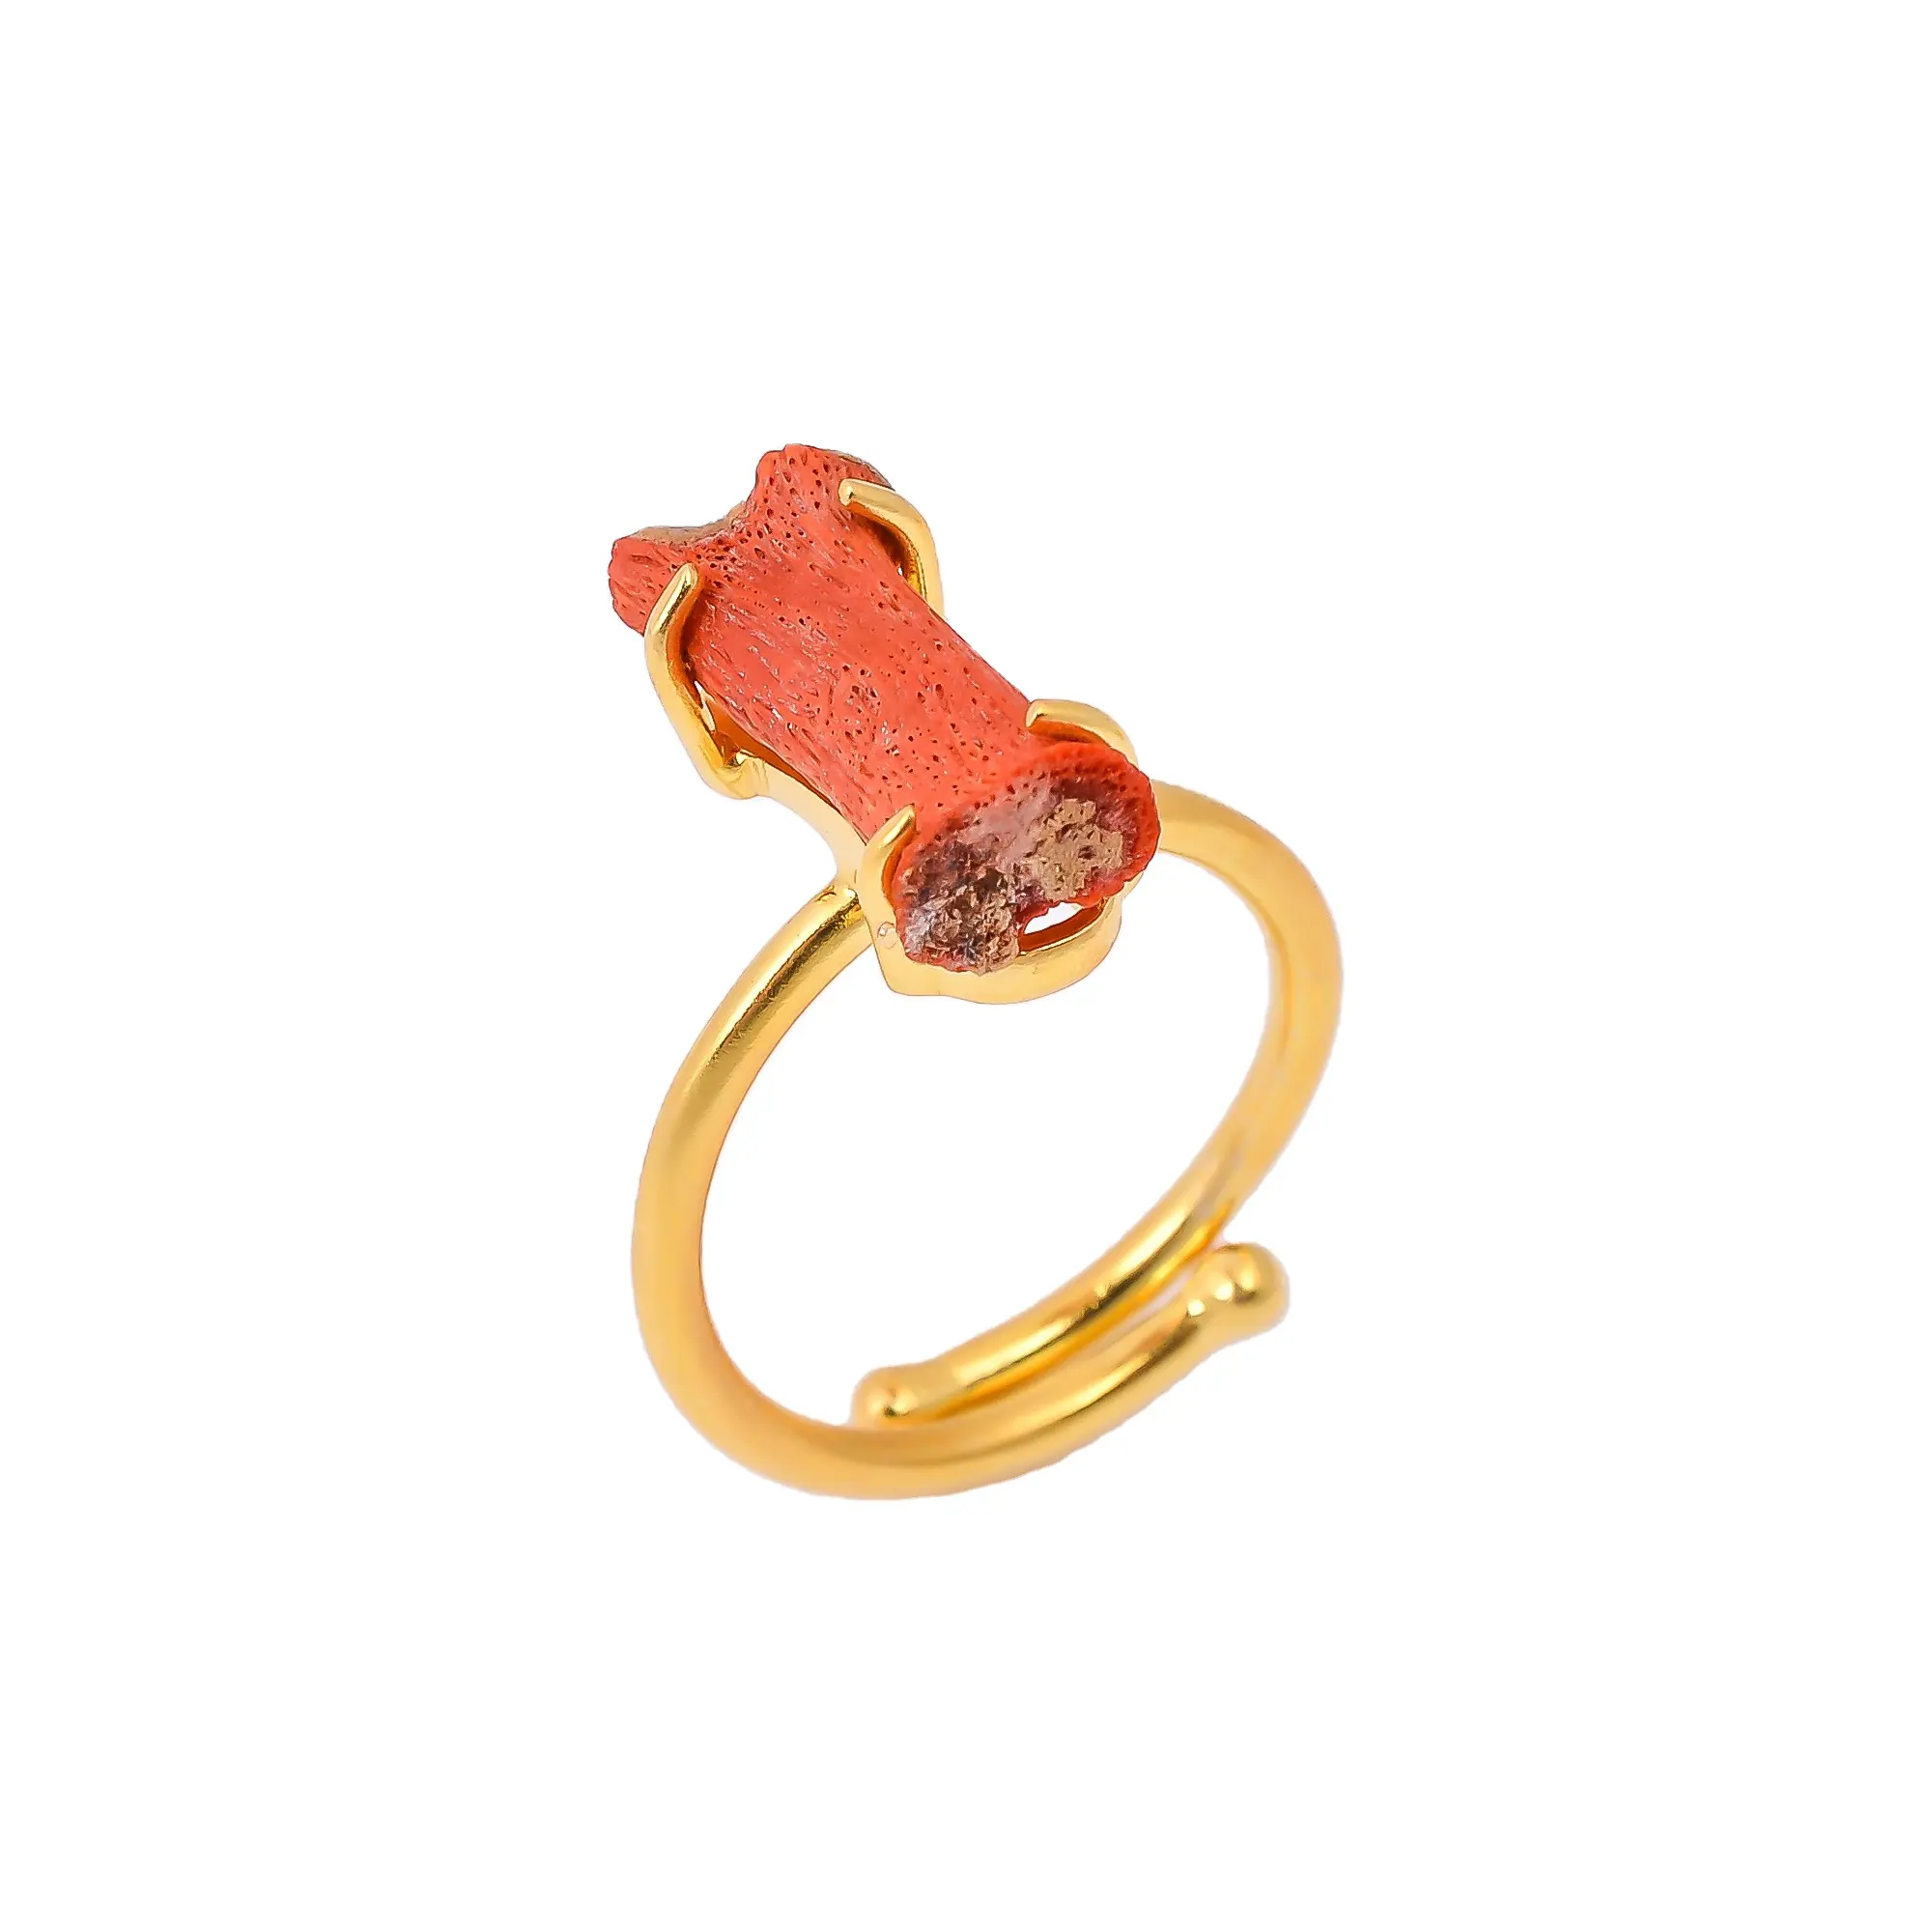 Vergoldeter antiker Ring Natur korallen Edelstein Schmuck aus massivem 925er Sterling silber hand gefertigte Ringe für Mädchen und Frauen